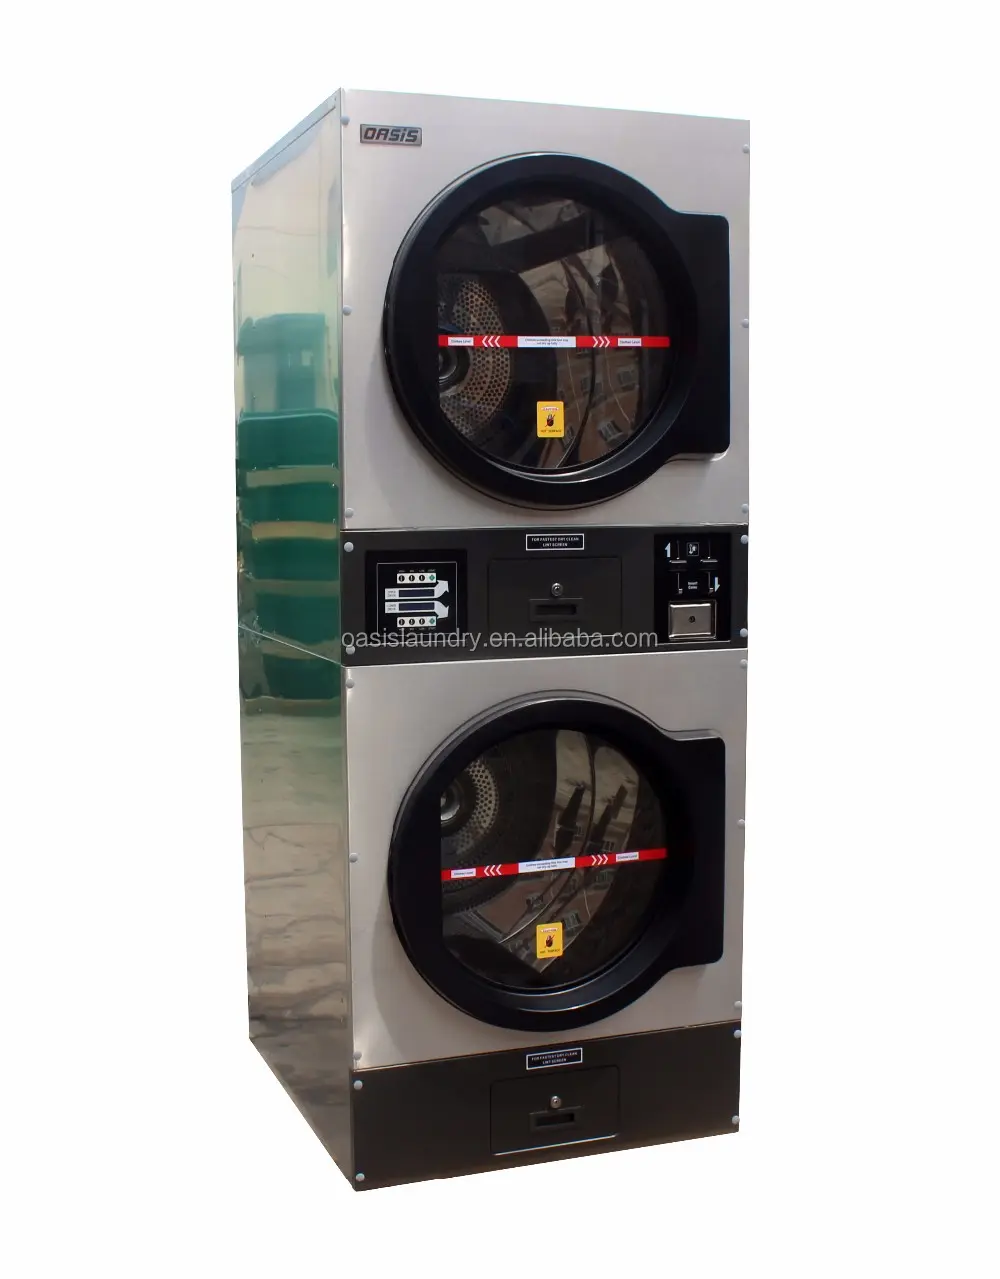 Торговый автомат для стирки на 15 кг, Энергоэффективный станок для стирки, оборудование для сушки на монетах, коммерческий стиральный автомат